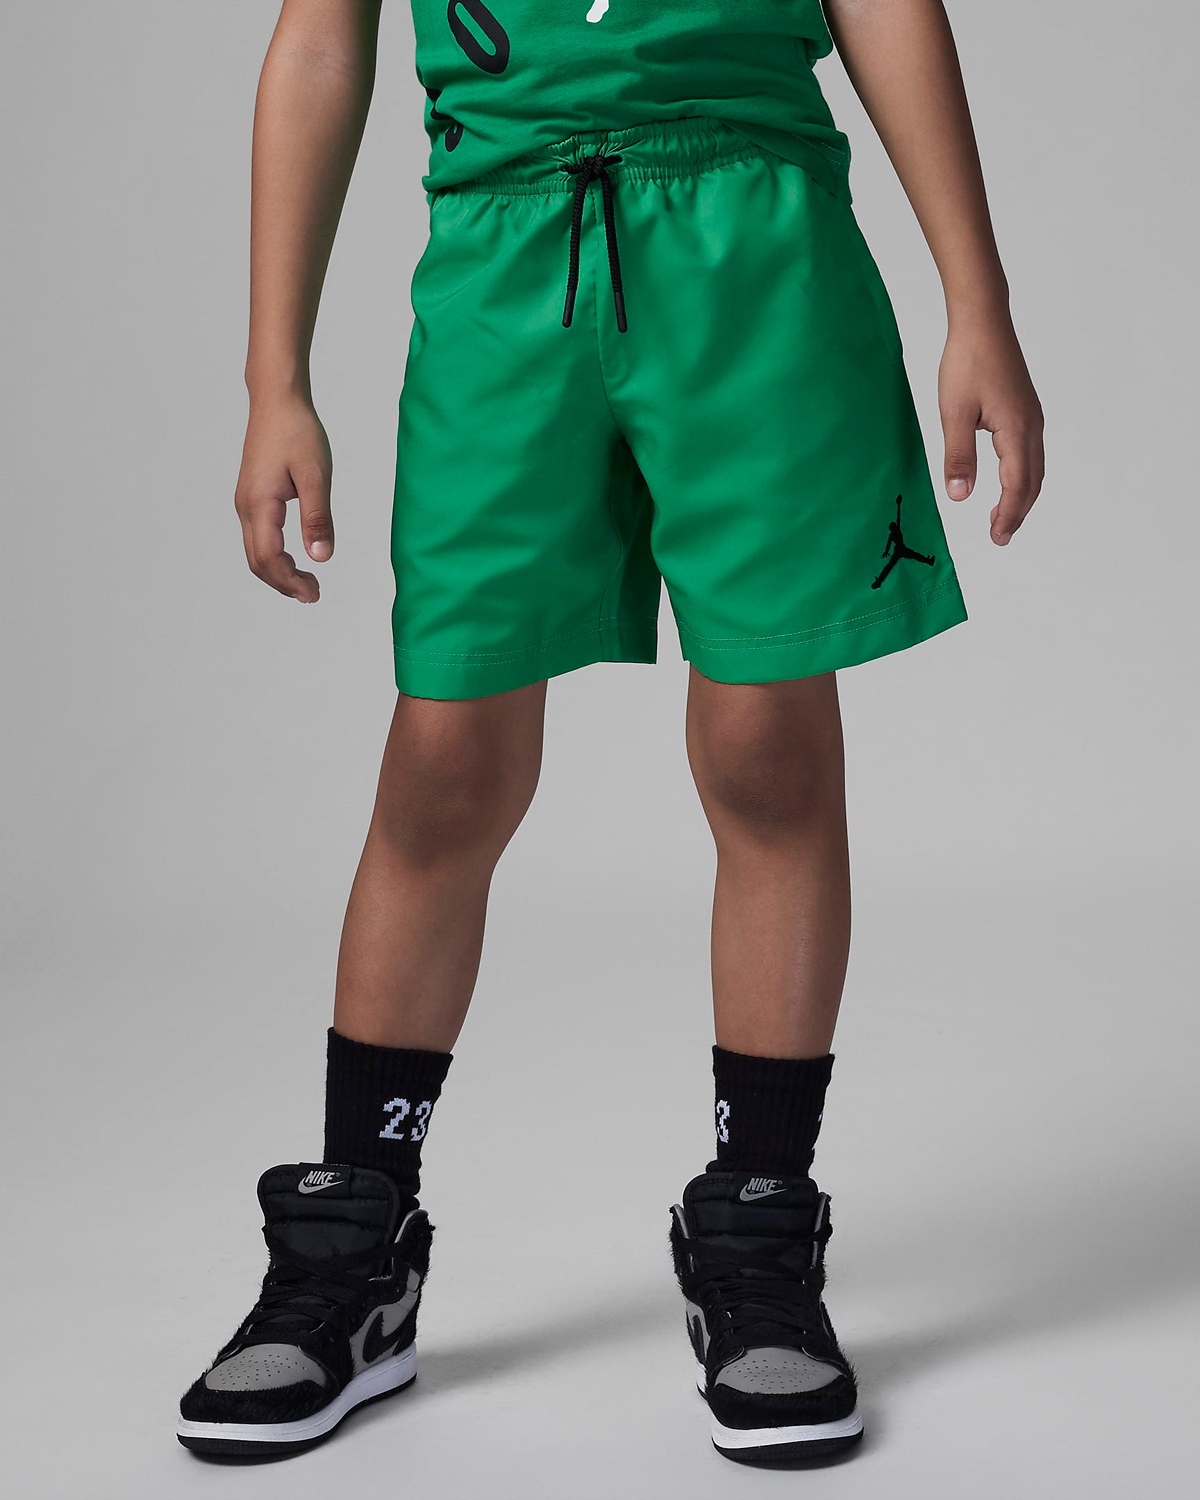 Jordan-Little-Kids-Boys-Woven-Shorts-Lucky-Green